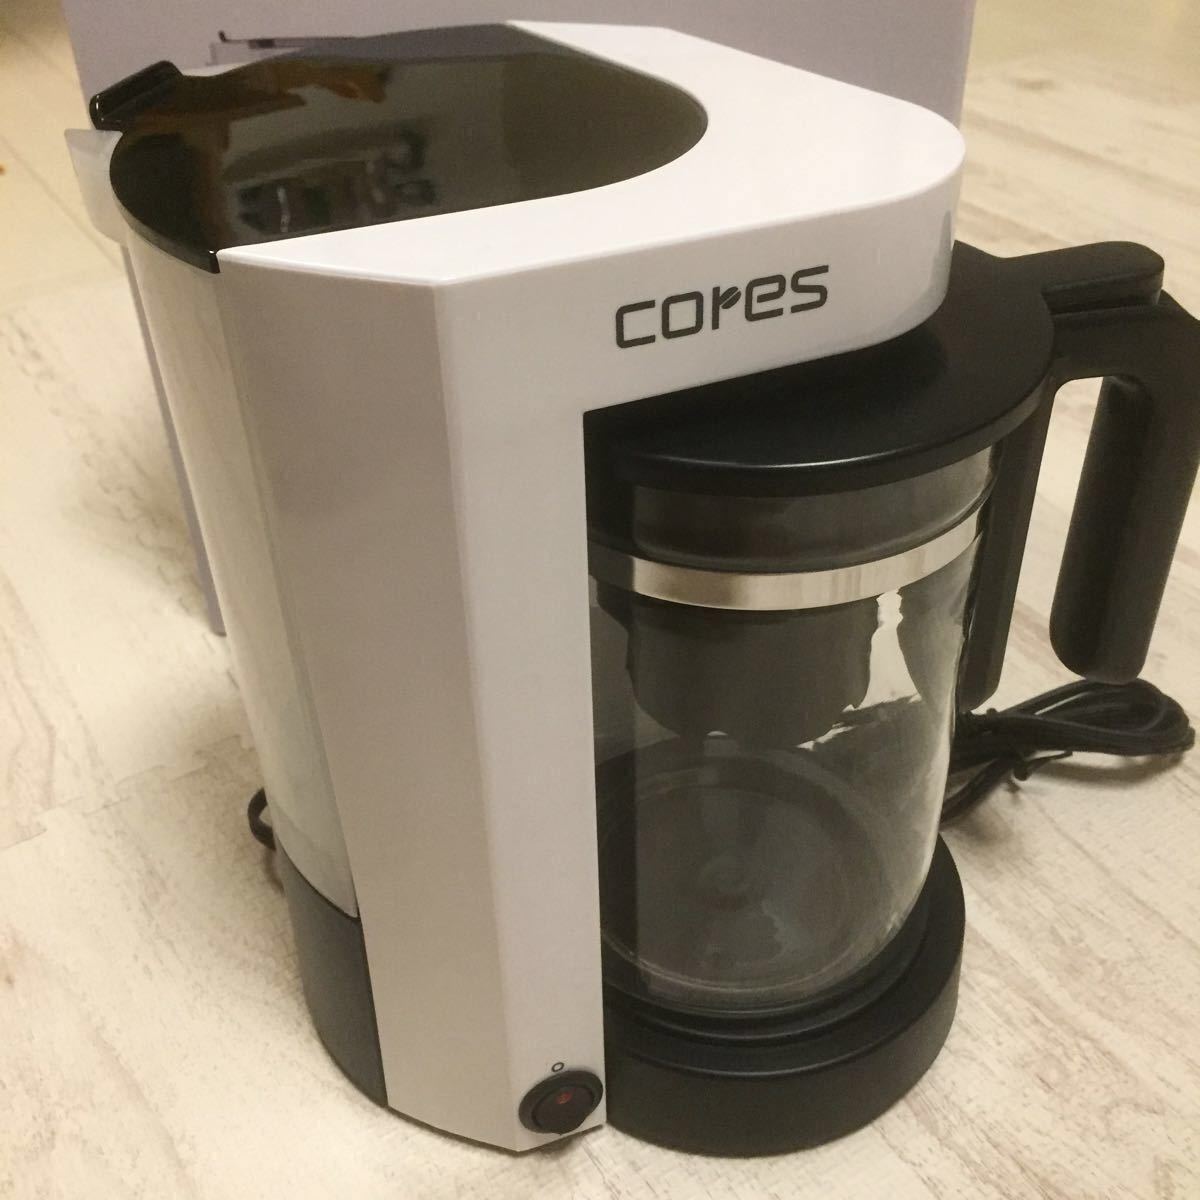 コーヒーメーカー 大石アンドアソシエイツ cores コレス